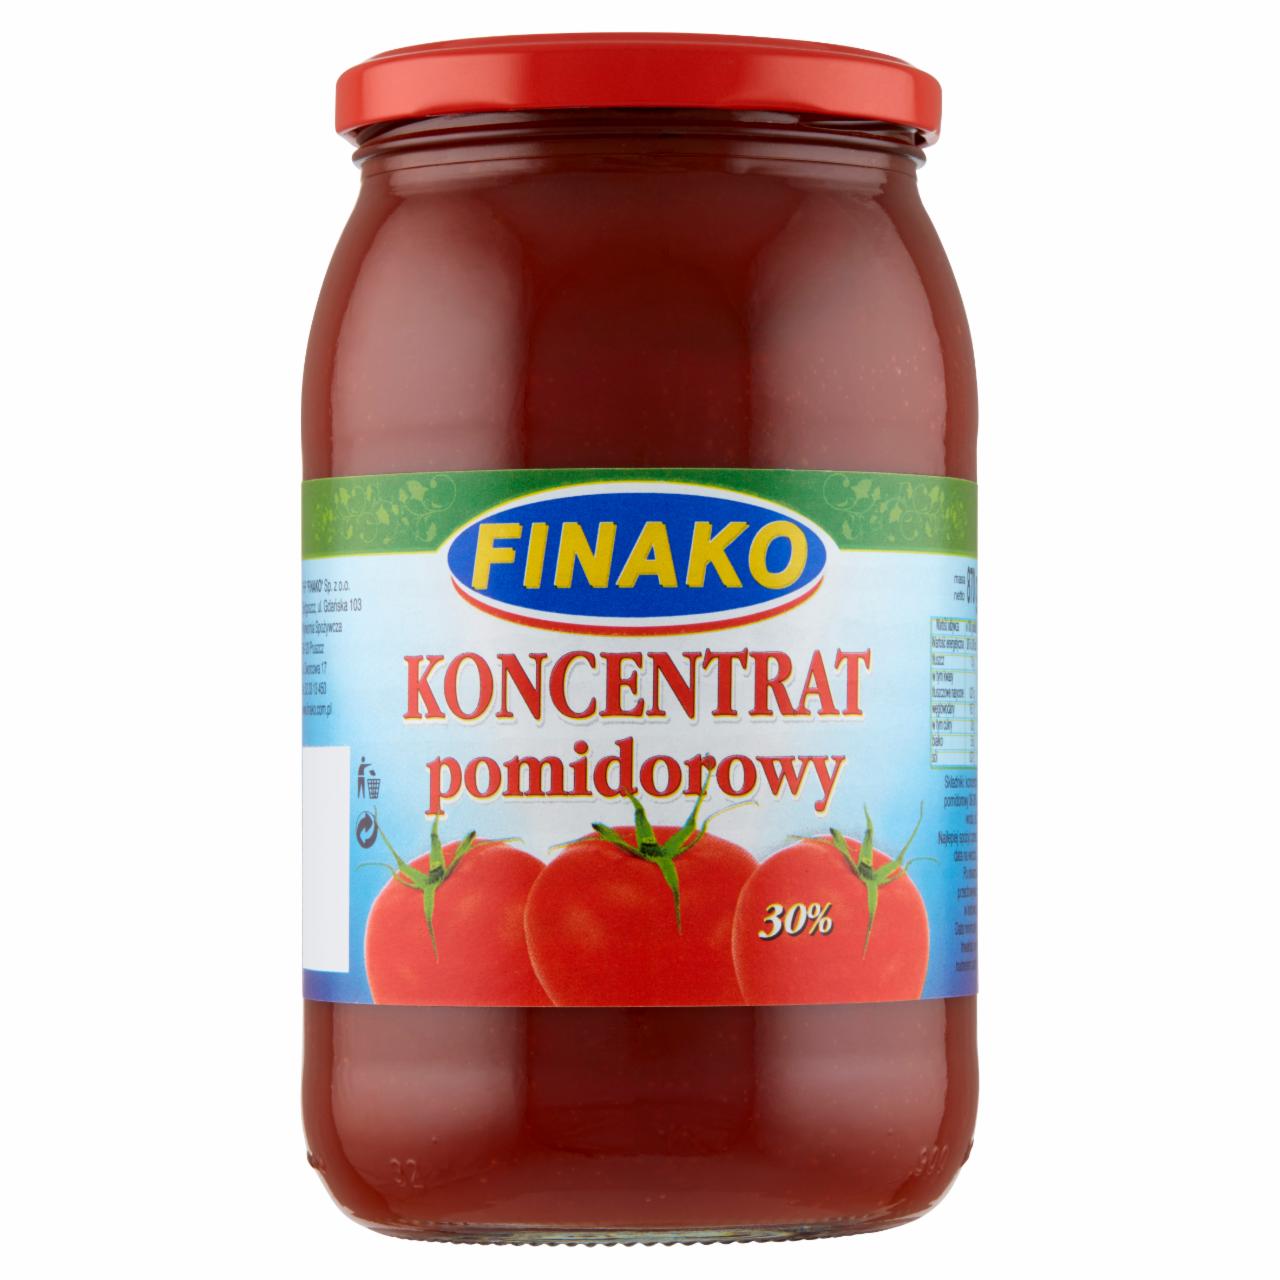 Zdjęcia - Finako Koncentrat pomidorowy 30% 870 g